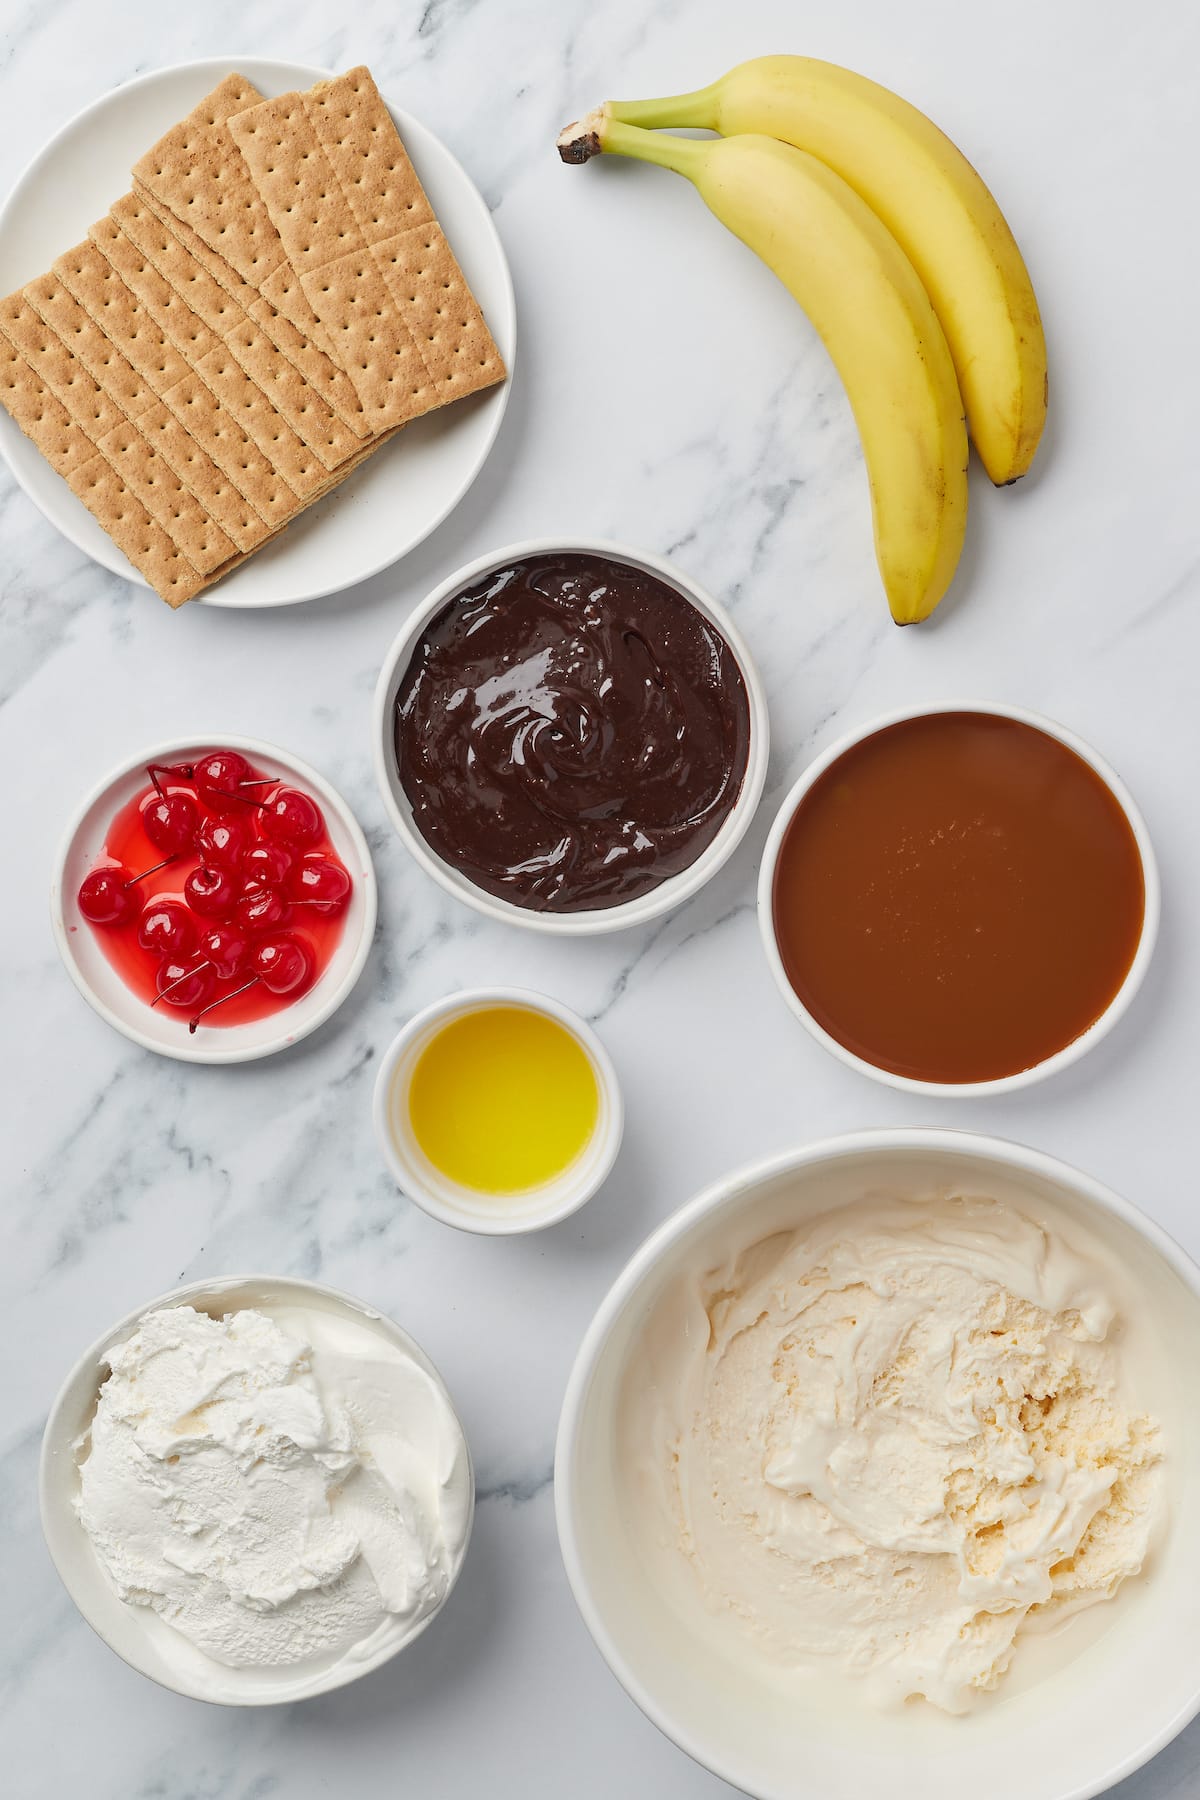 From top left: Graham crackers, bananas, maraschino cherries, hot fudge sauce, caramel suace, butter, whipped cream, vanilla ice cream.